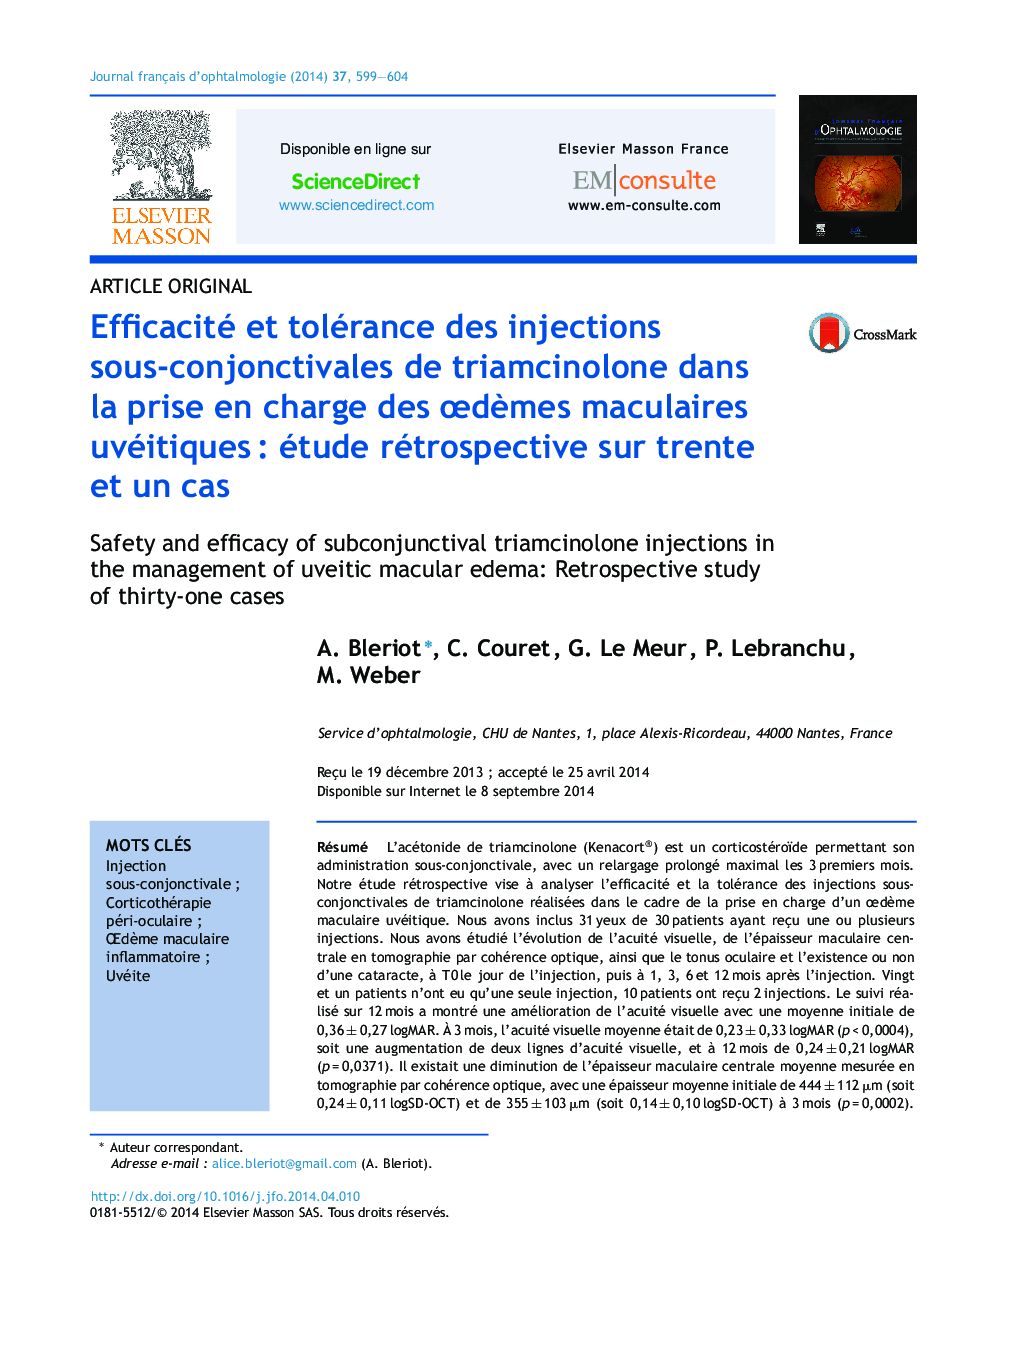 Efficacité et tolérance des injections sous-conjonctivales de triamcinolone dans la prise en charge des ÅdÃ¨mes maculaires uvéitiquesÂ : étude rétrospective sur trente et un cas